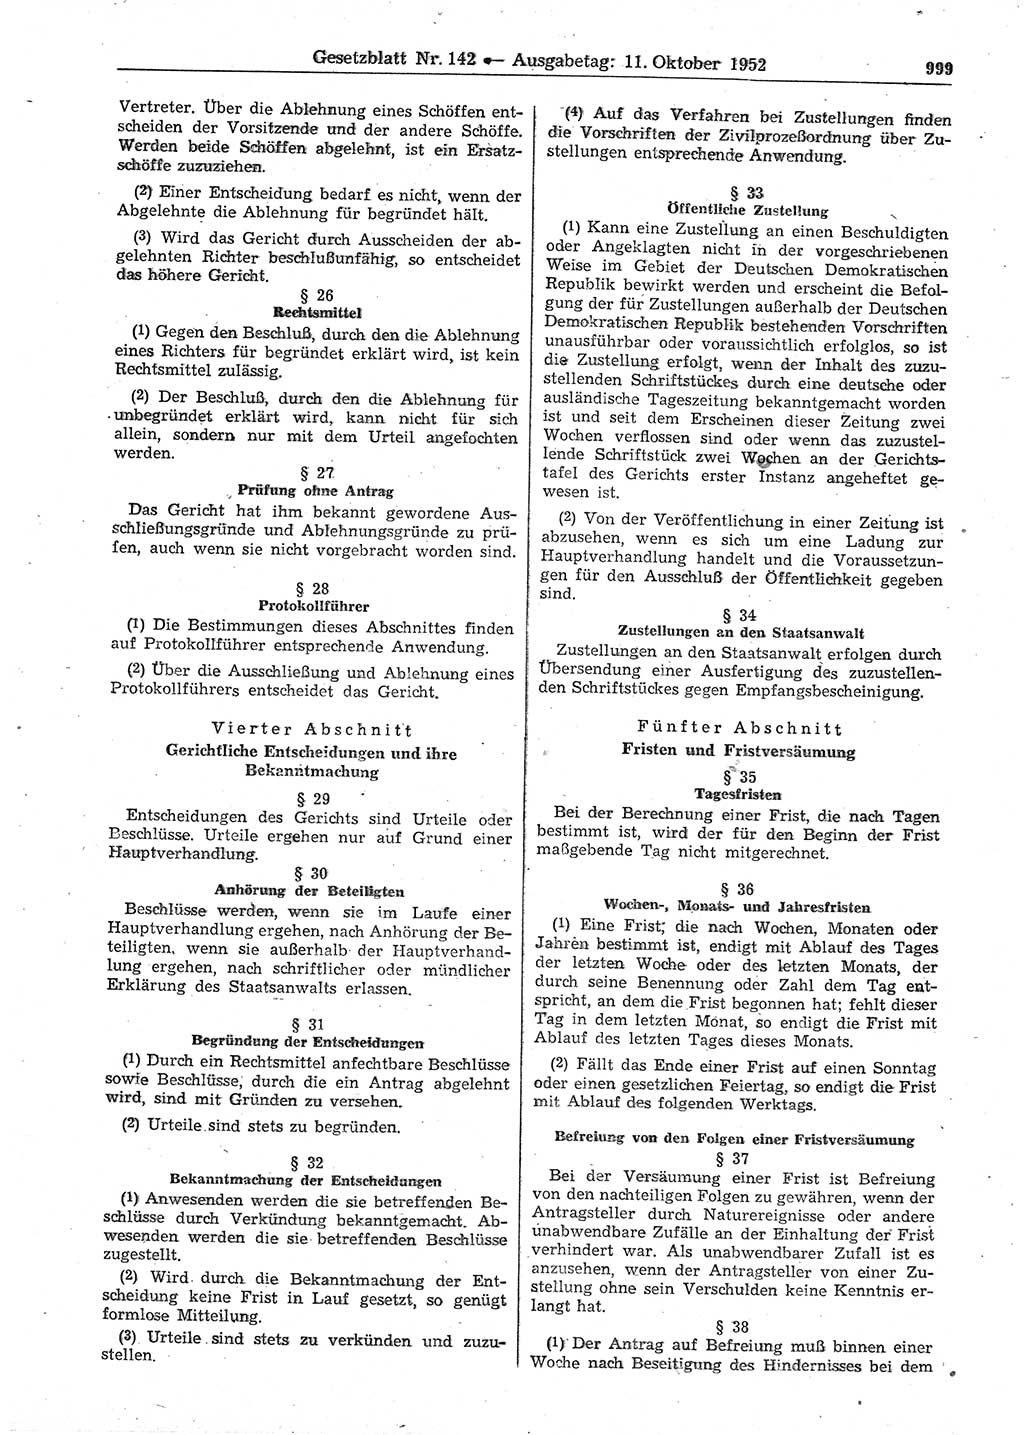 Gesetzblatt (GBl.) der Deutschen Demokratischen Republik (DDR) 1952, Seite 999 (GBl. DDR 1952, S. 999)